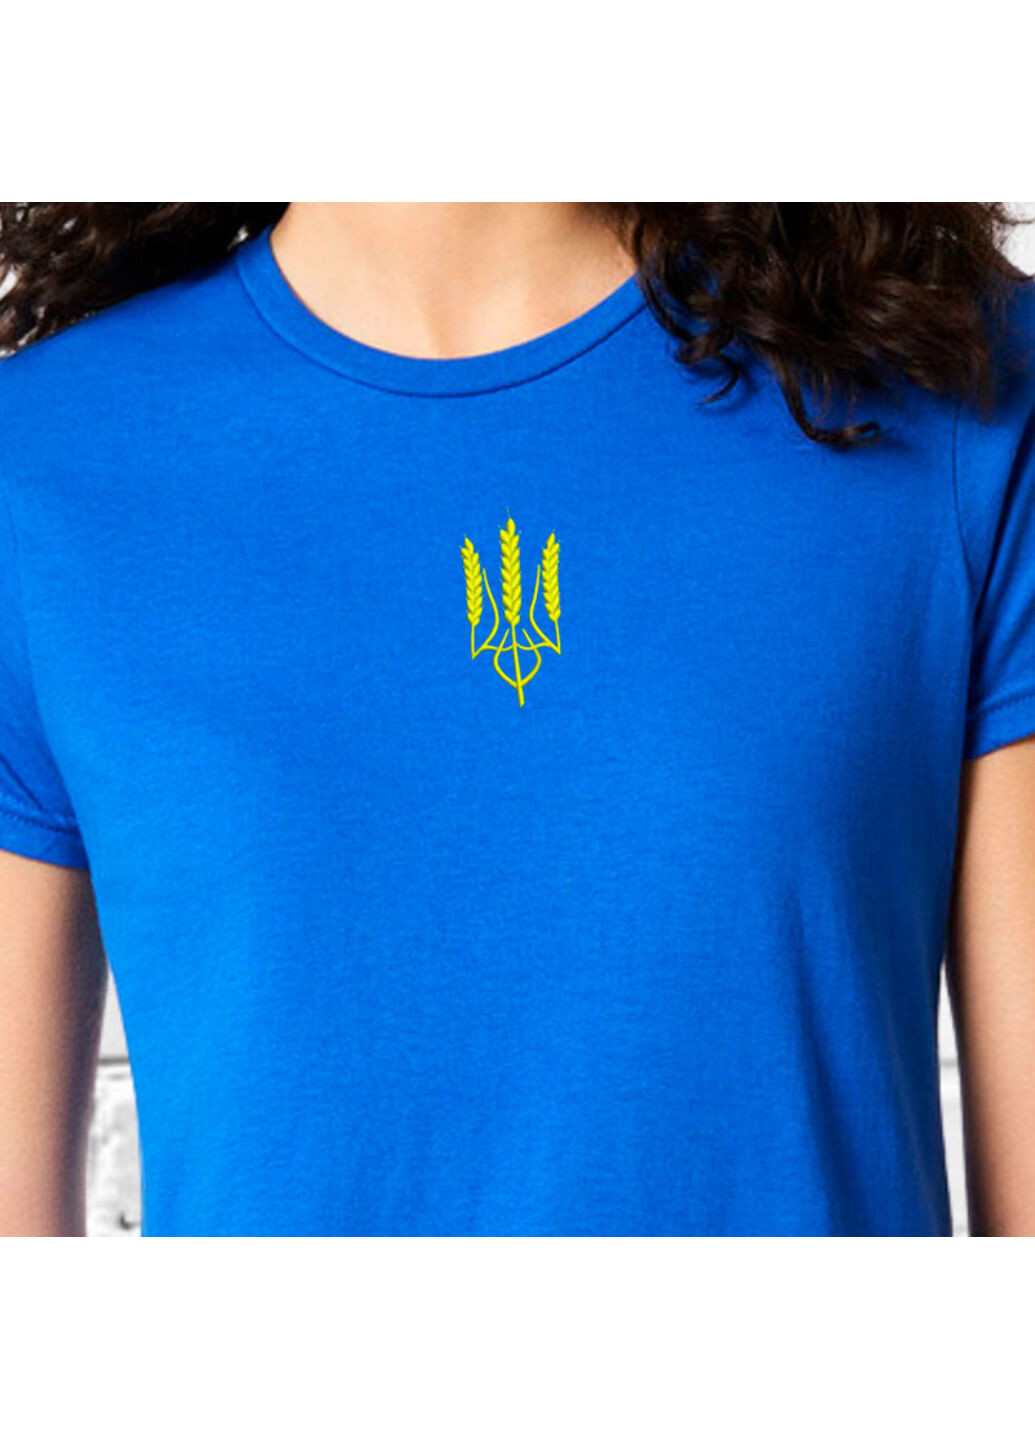 Синяя футболка з вишивкою тризуба (колос) 02-2 женская синий l No Brand